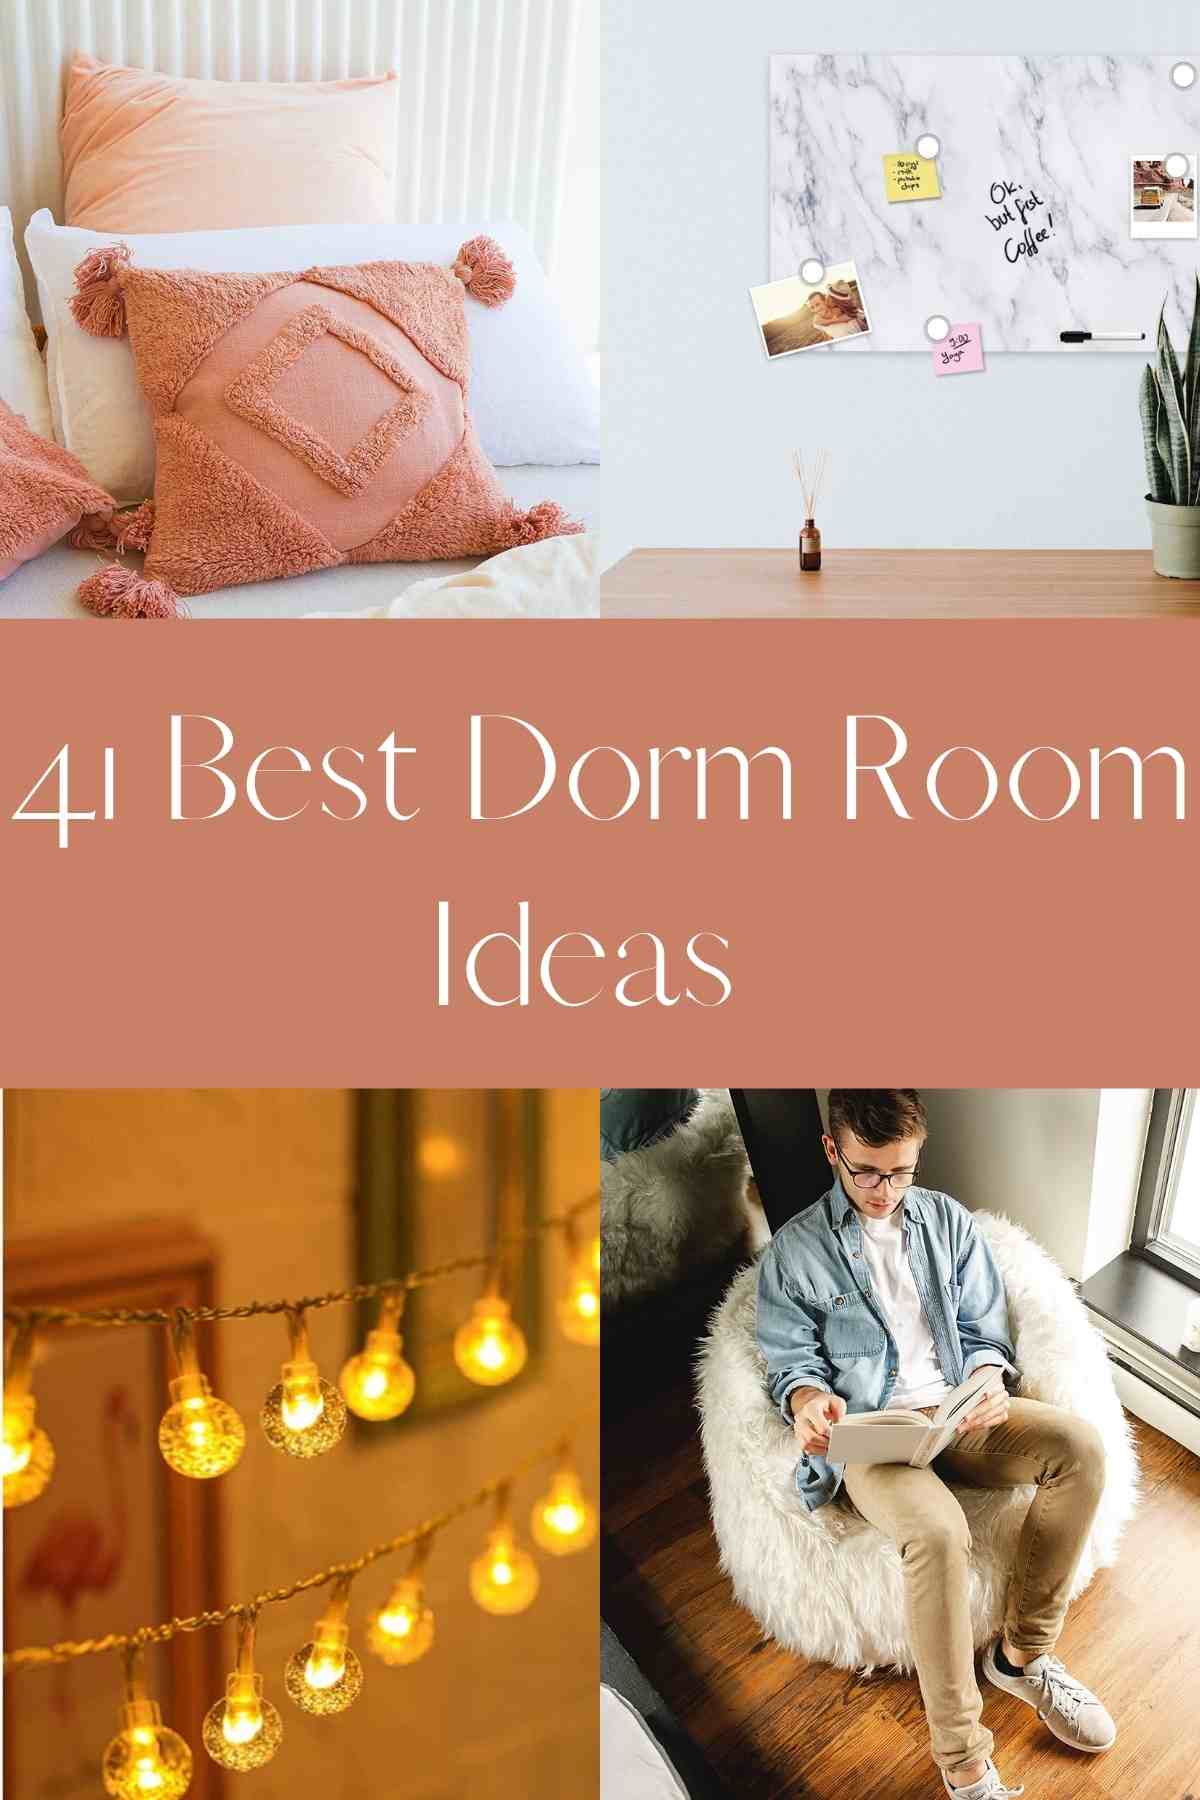 Dorm decor ideas for teens